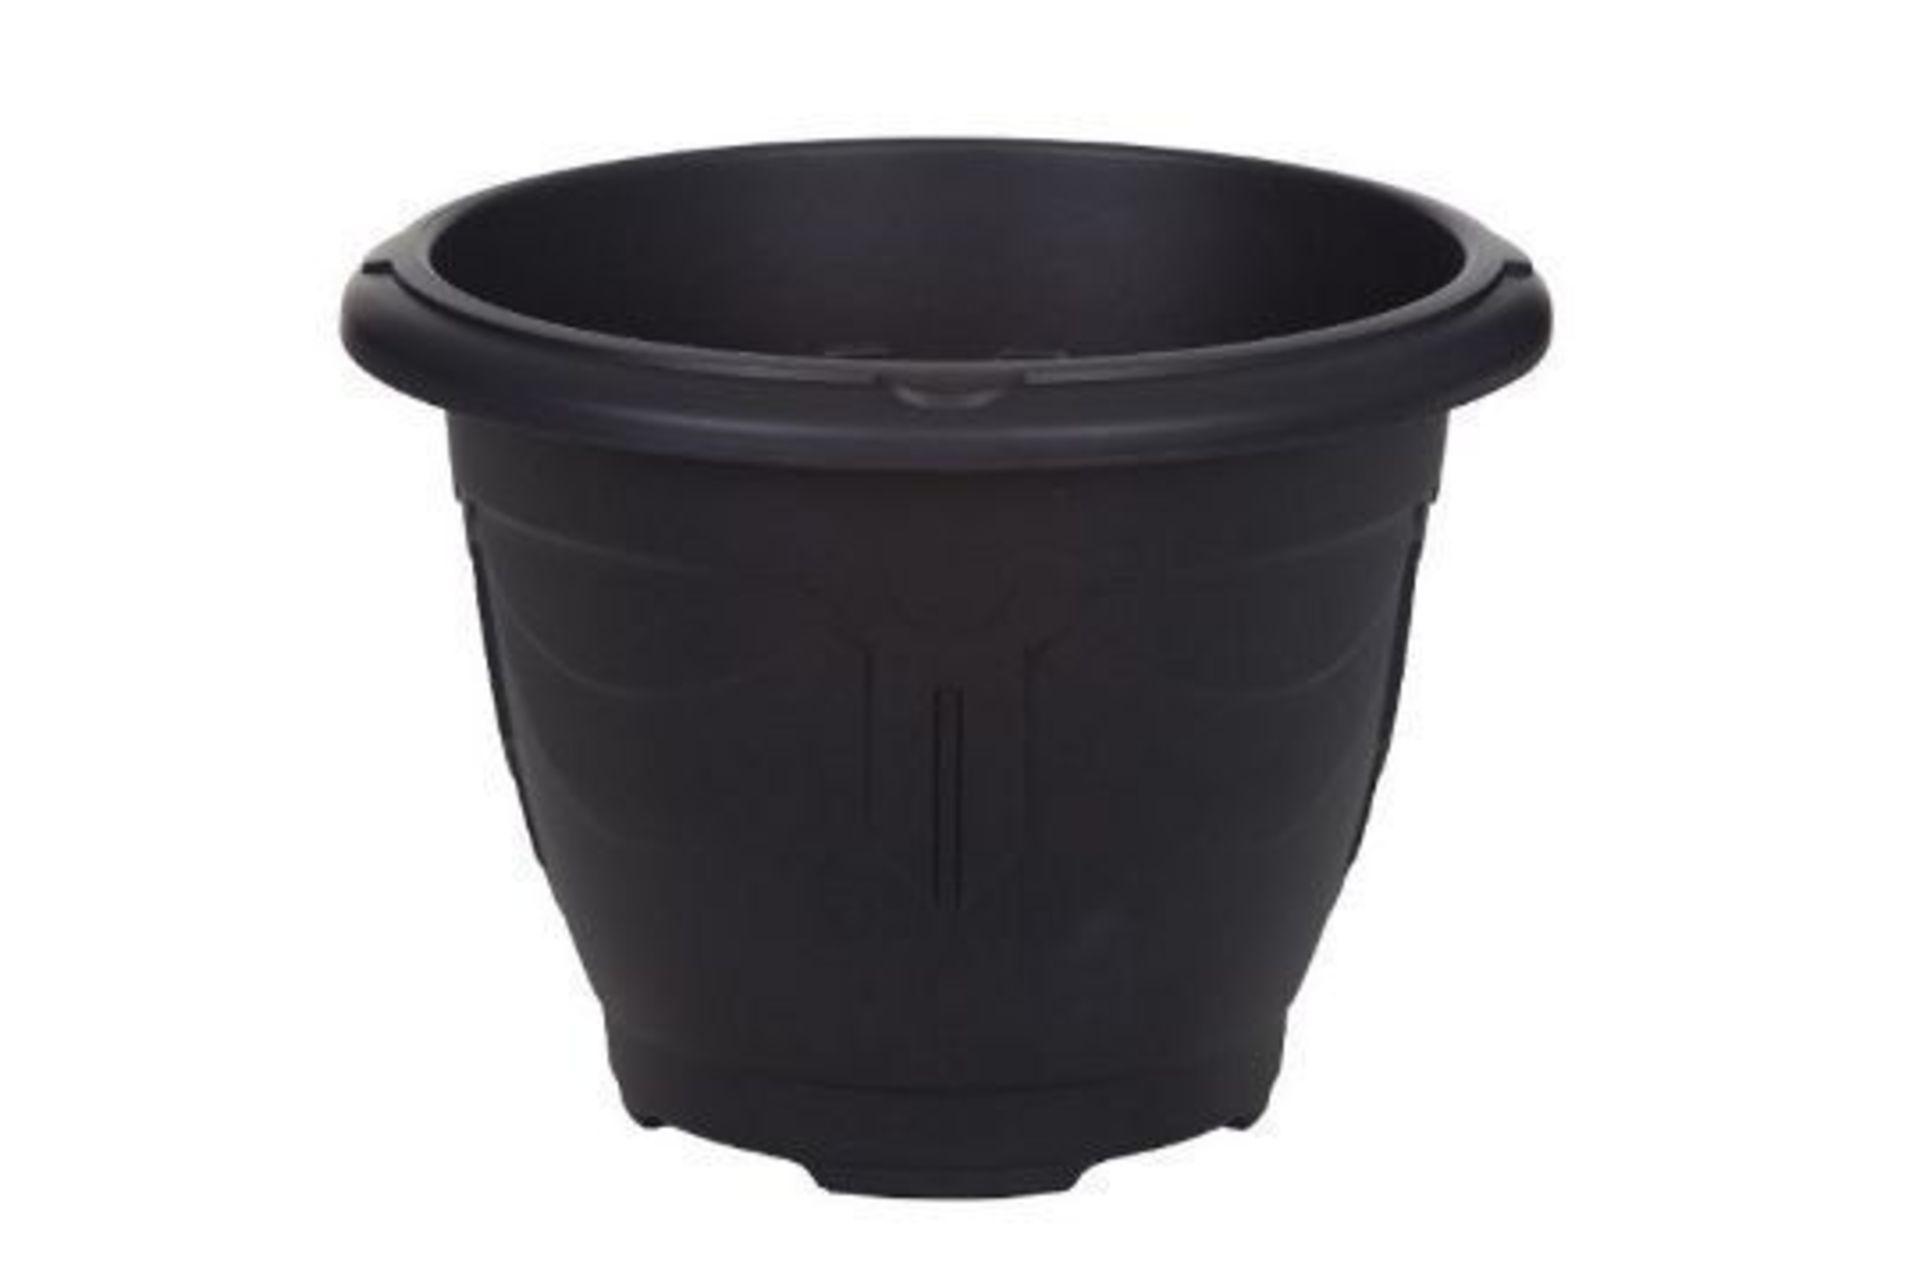 x 2 Black Round Venetian Pot Decorative Plastic Garden Flower Planter Pot 24cm